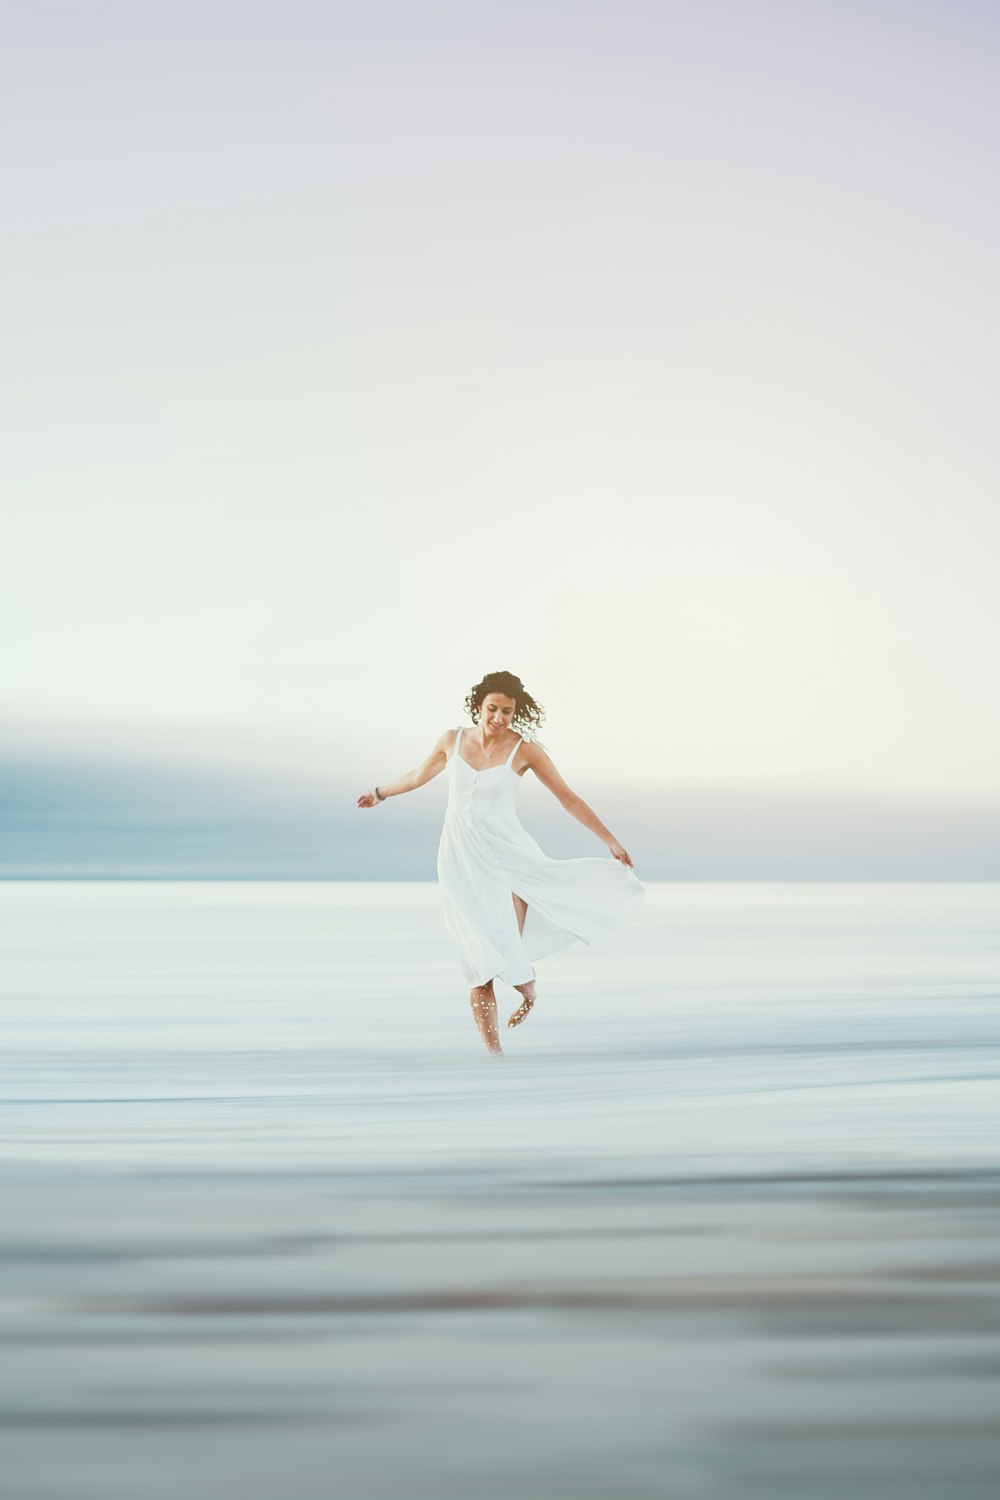 Une femme en robe blanche sautant en l’air